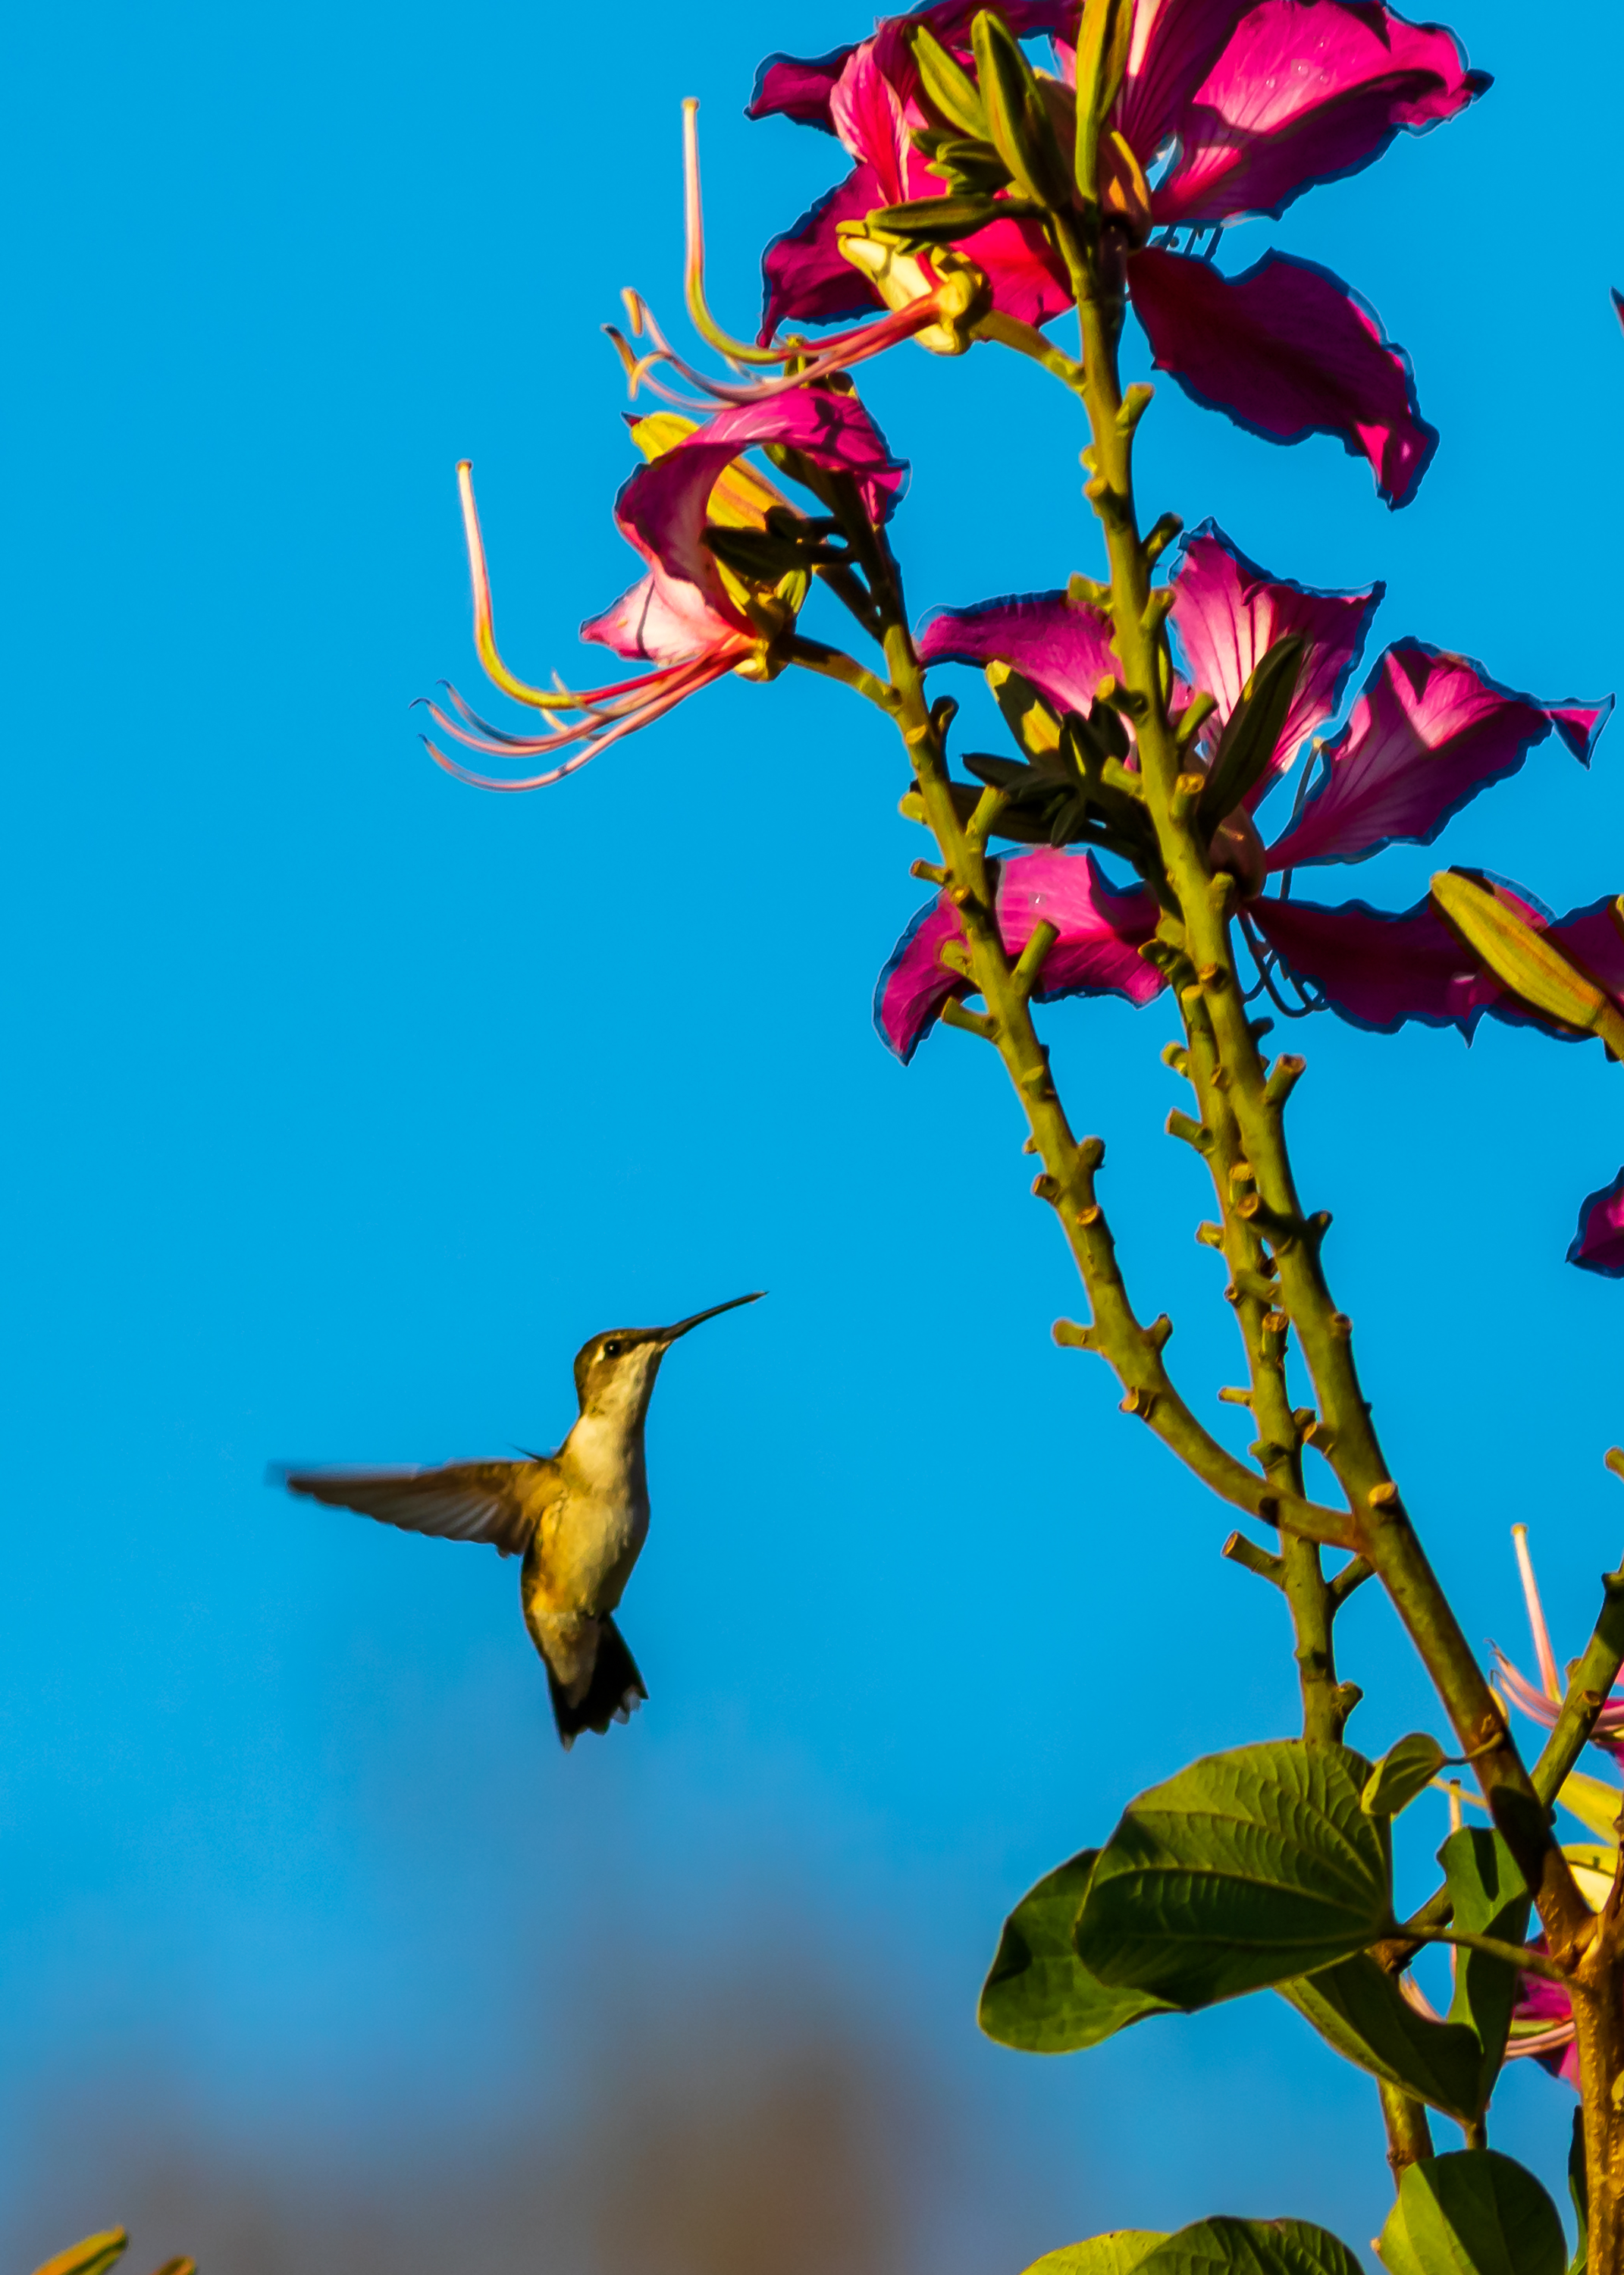 Hummingbird at the Hong Kong Orchid Tree